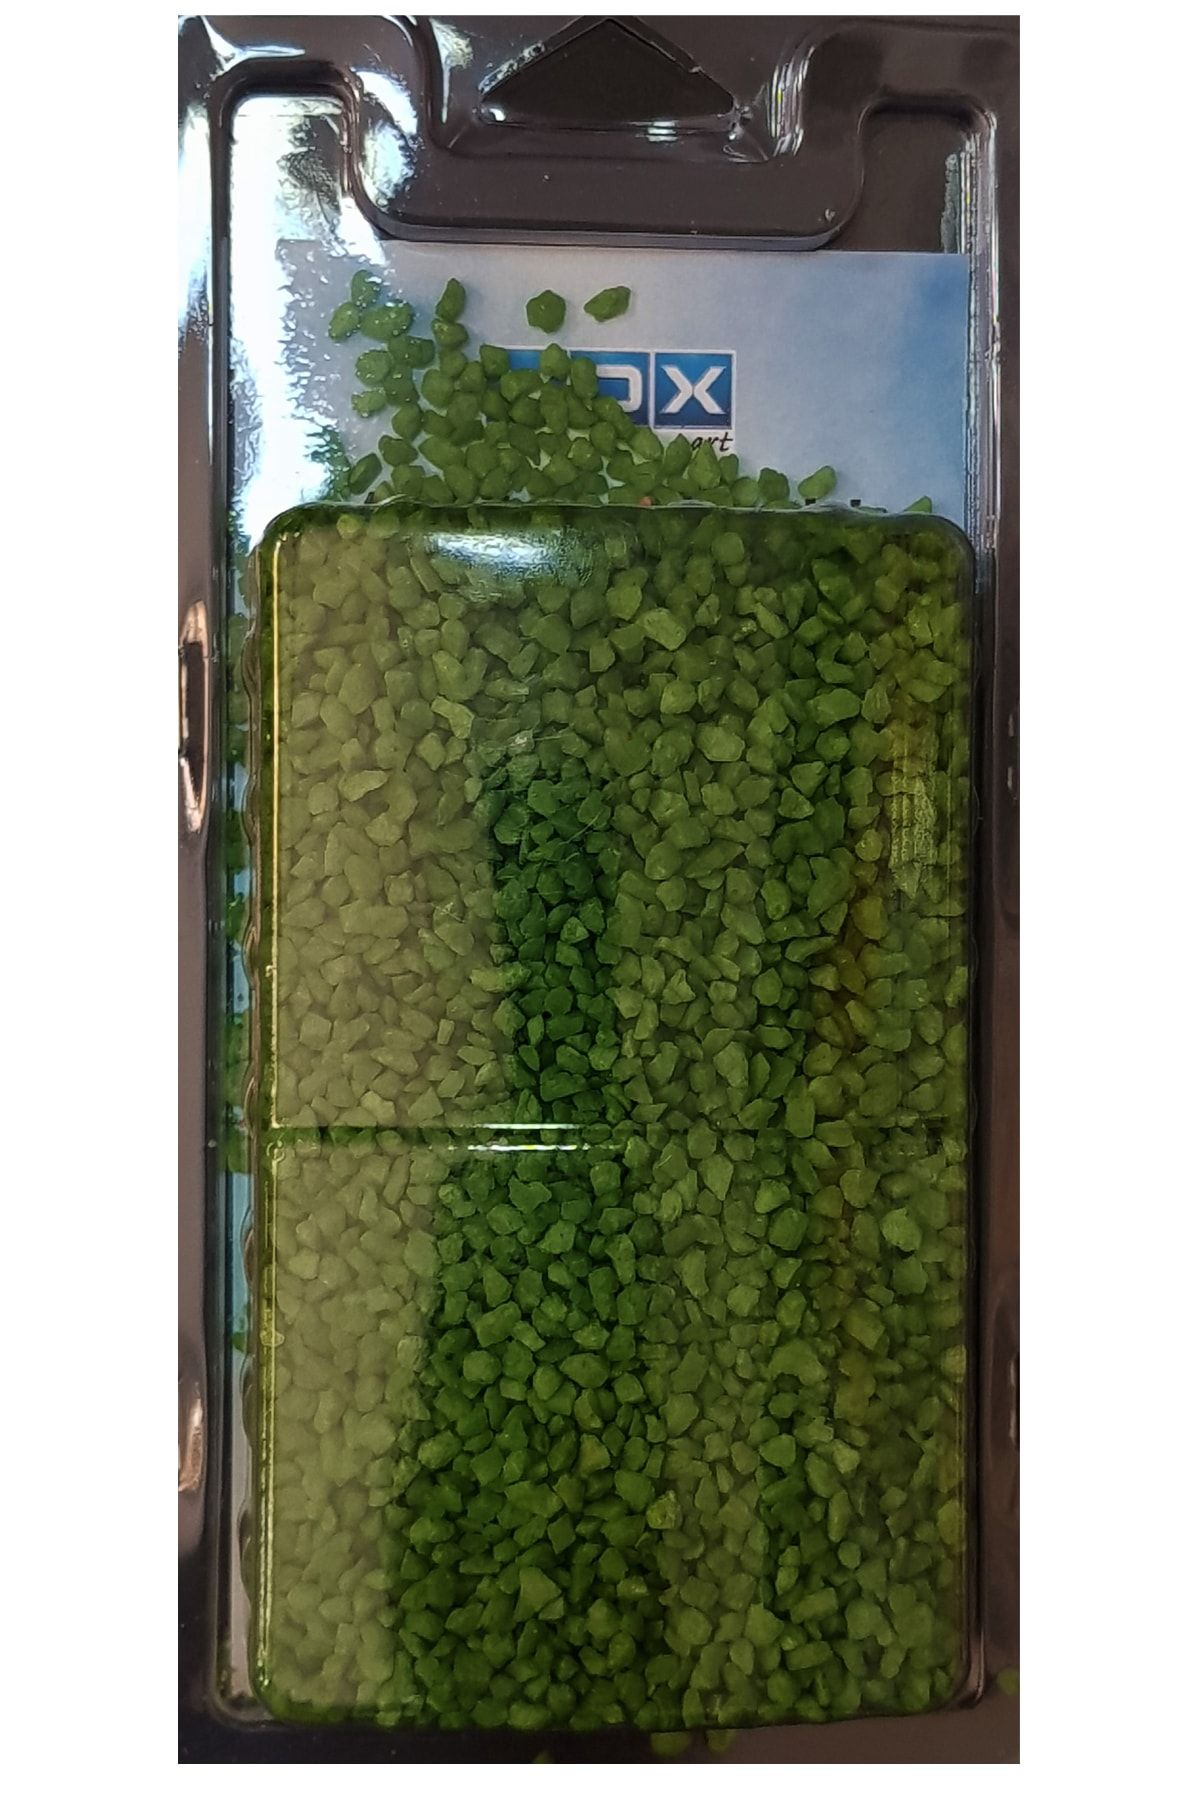 Vox Art Ince Çakıl Taşı - 230 Gr - Yeşil